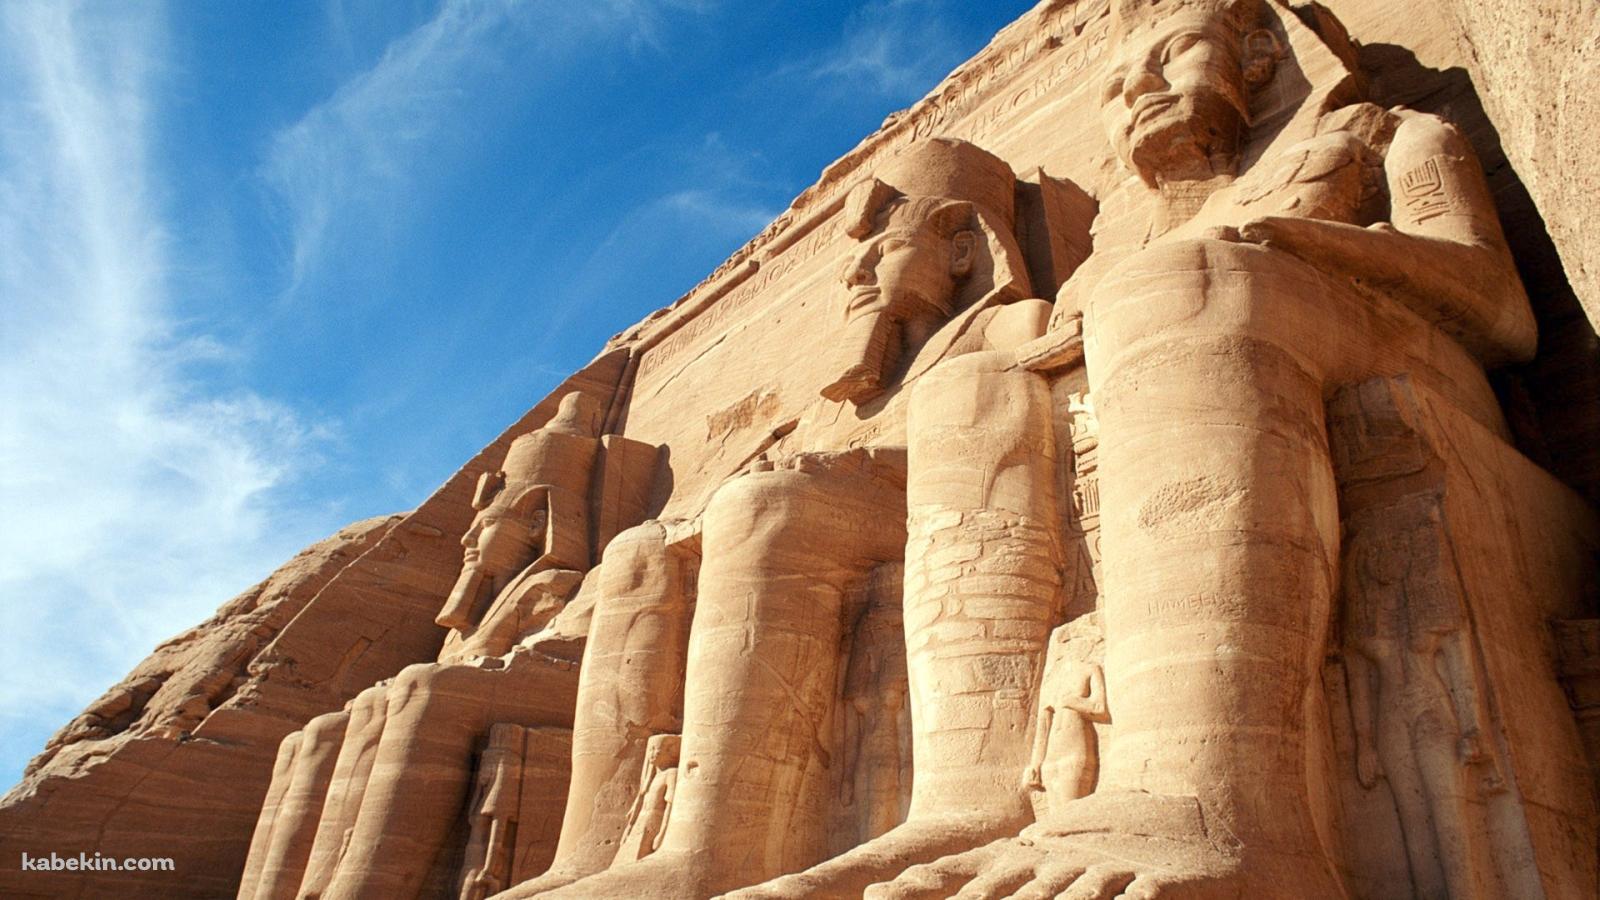 エジプトの寺院の壁紙(1600px x 900px) 高画質 PC・デスクトップ用